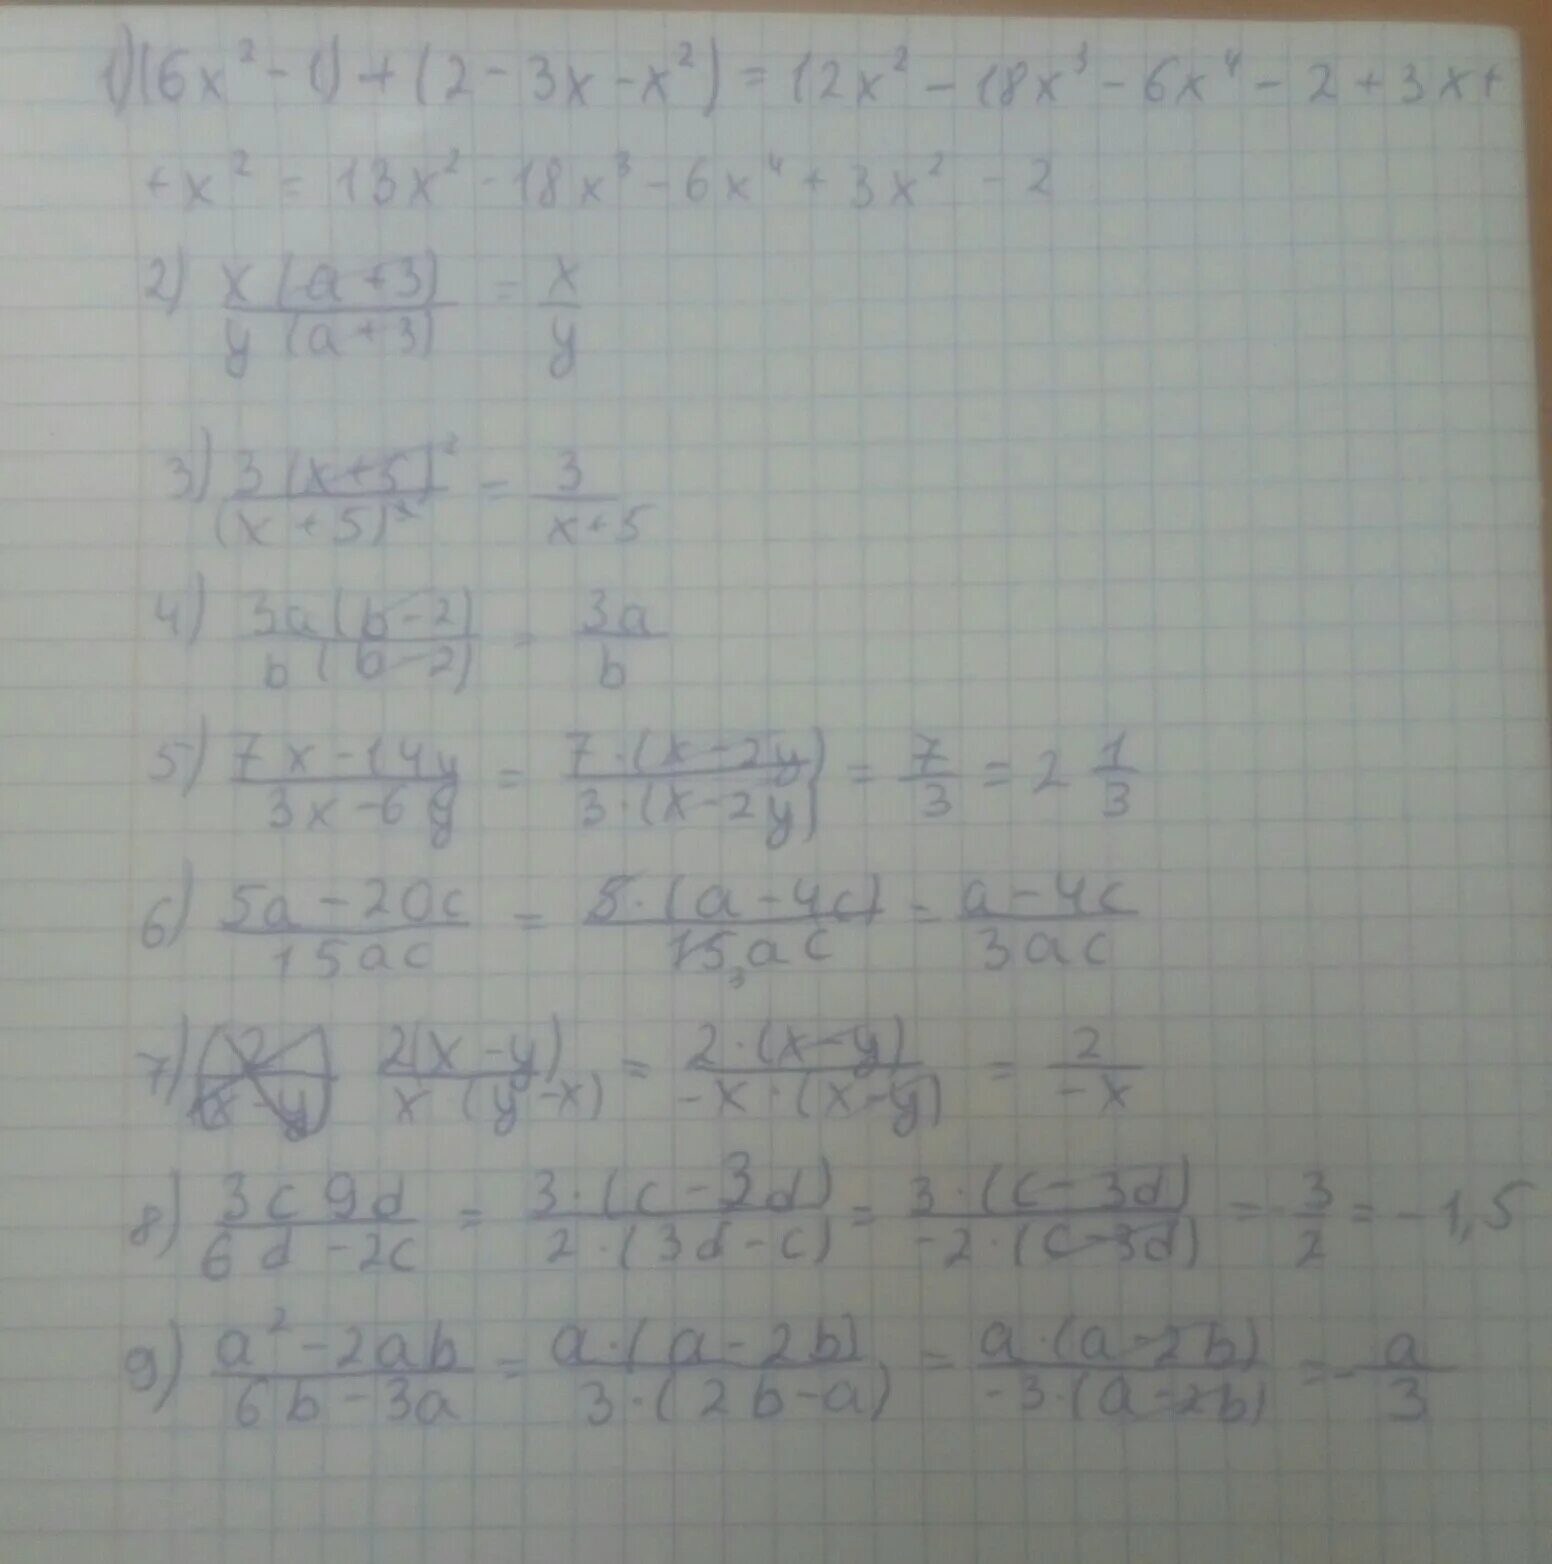 12 y y 6 упростить. Упростить выражение 3x-5-2x+7. Упростить выражение: -4x(1-x)+(4x-3)(x-1). Упростите выражение x 2 x 5 3x 1 2x. Упростите выражение 2x x-3 -3x x+5.